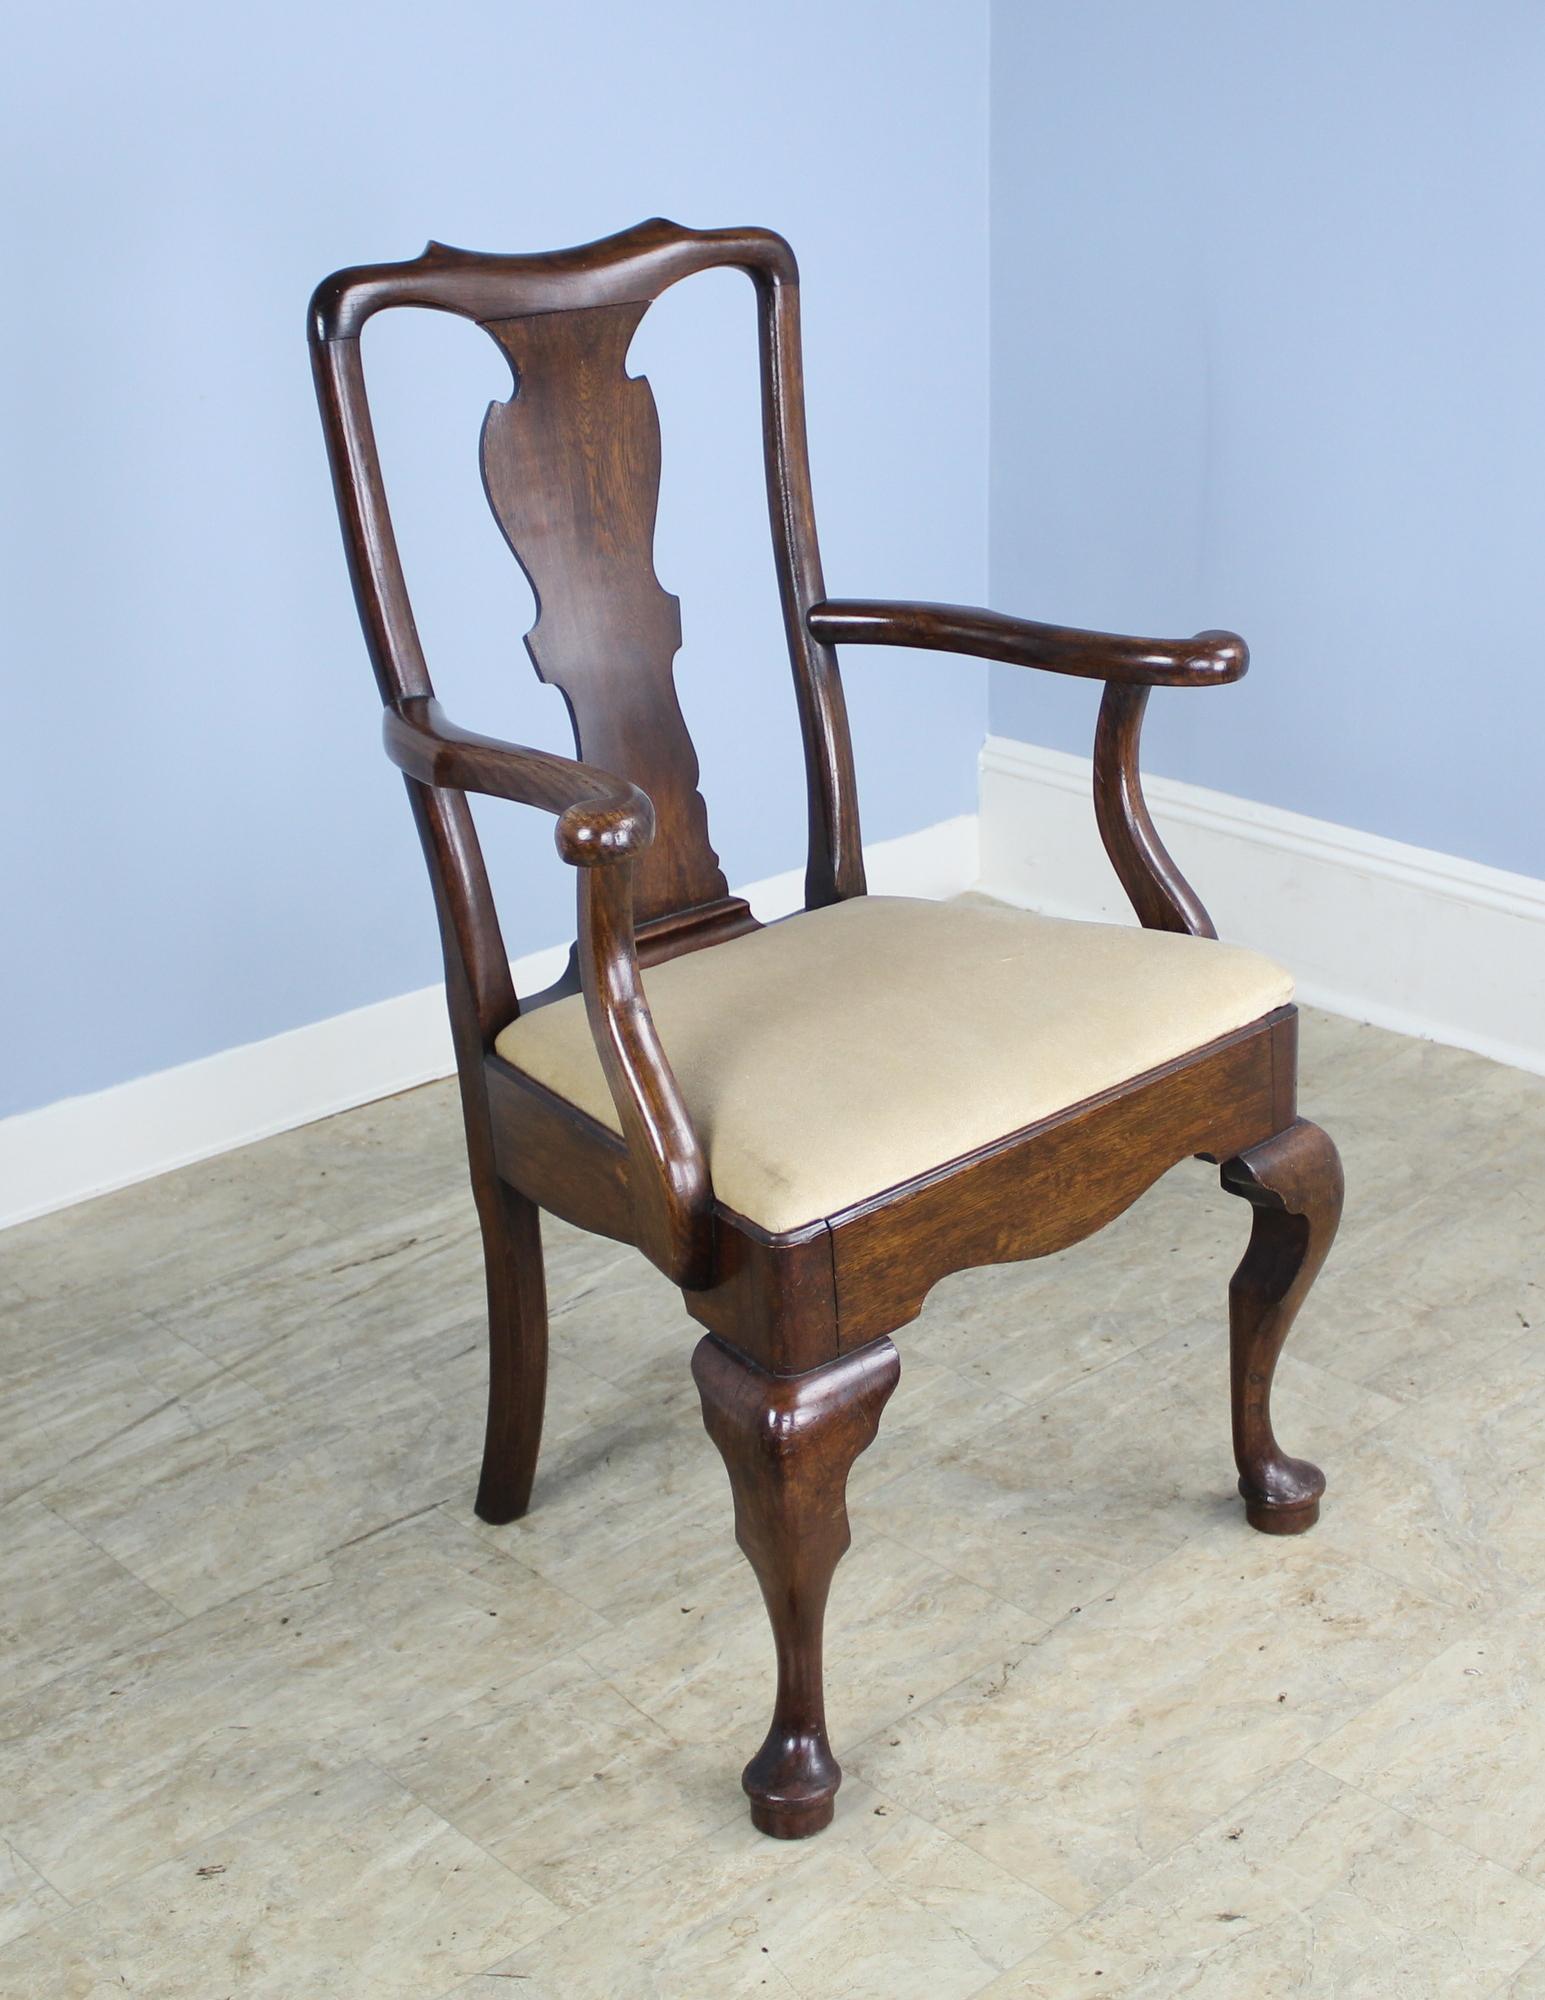 Ein Satz von vier Beistellstühlen und zwei Sesseln aus massiver Eiche im Stil von George III. Wunderbare satte braune Farbe und in sehr gutem, robustem Zustand. Die unten angegebenen Maße beziehen sich auf die Sessel. Die Beistellstühle sind 22